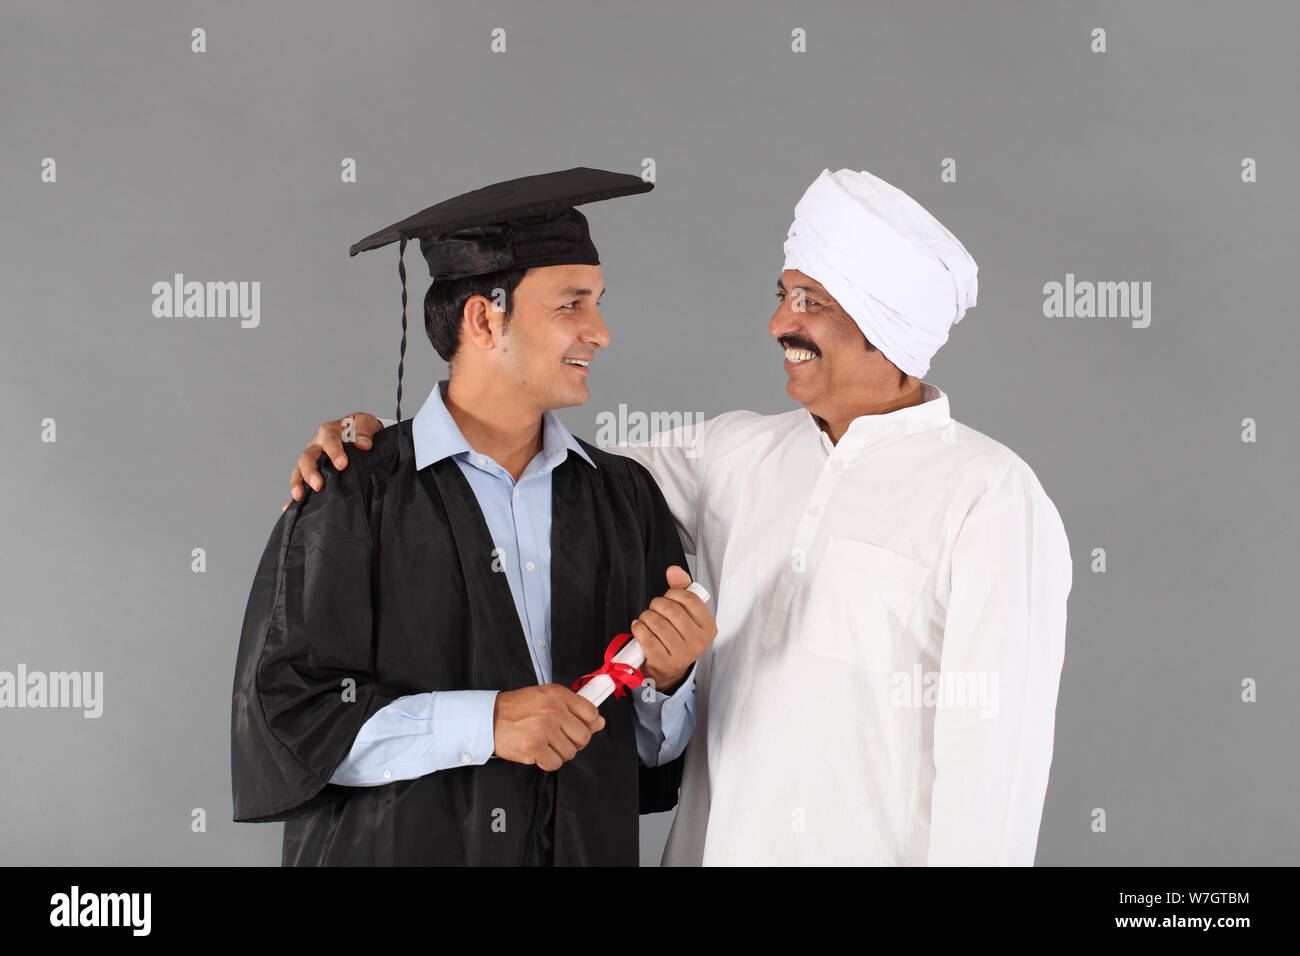 Männliche Absolventen mit seinem Vater Stockfoto